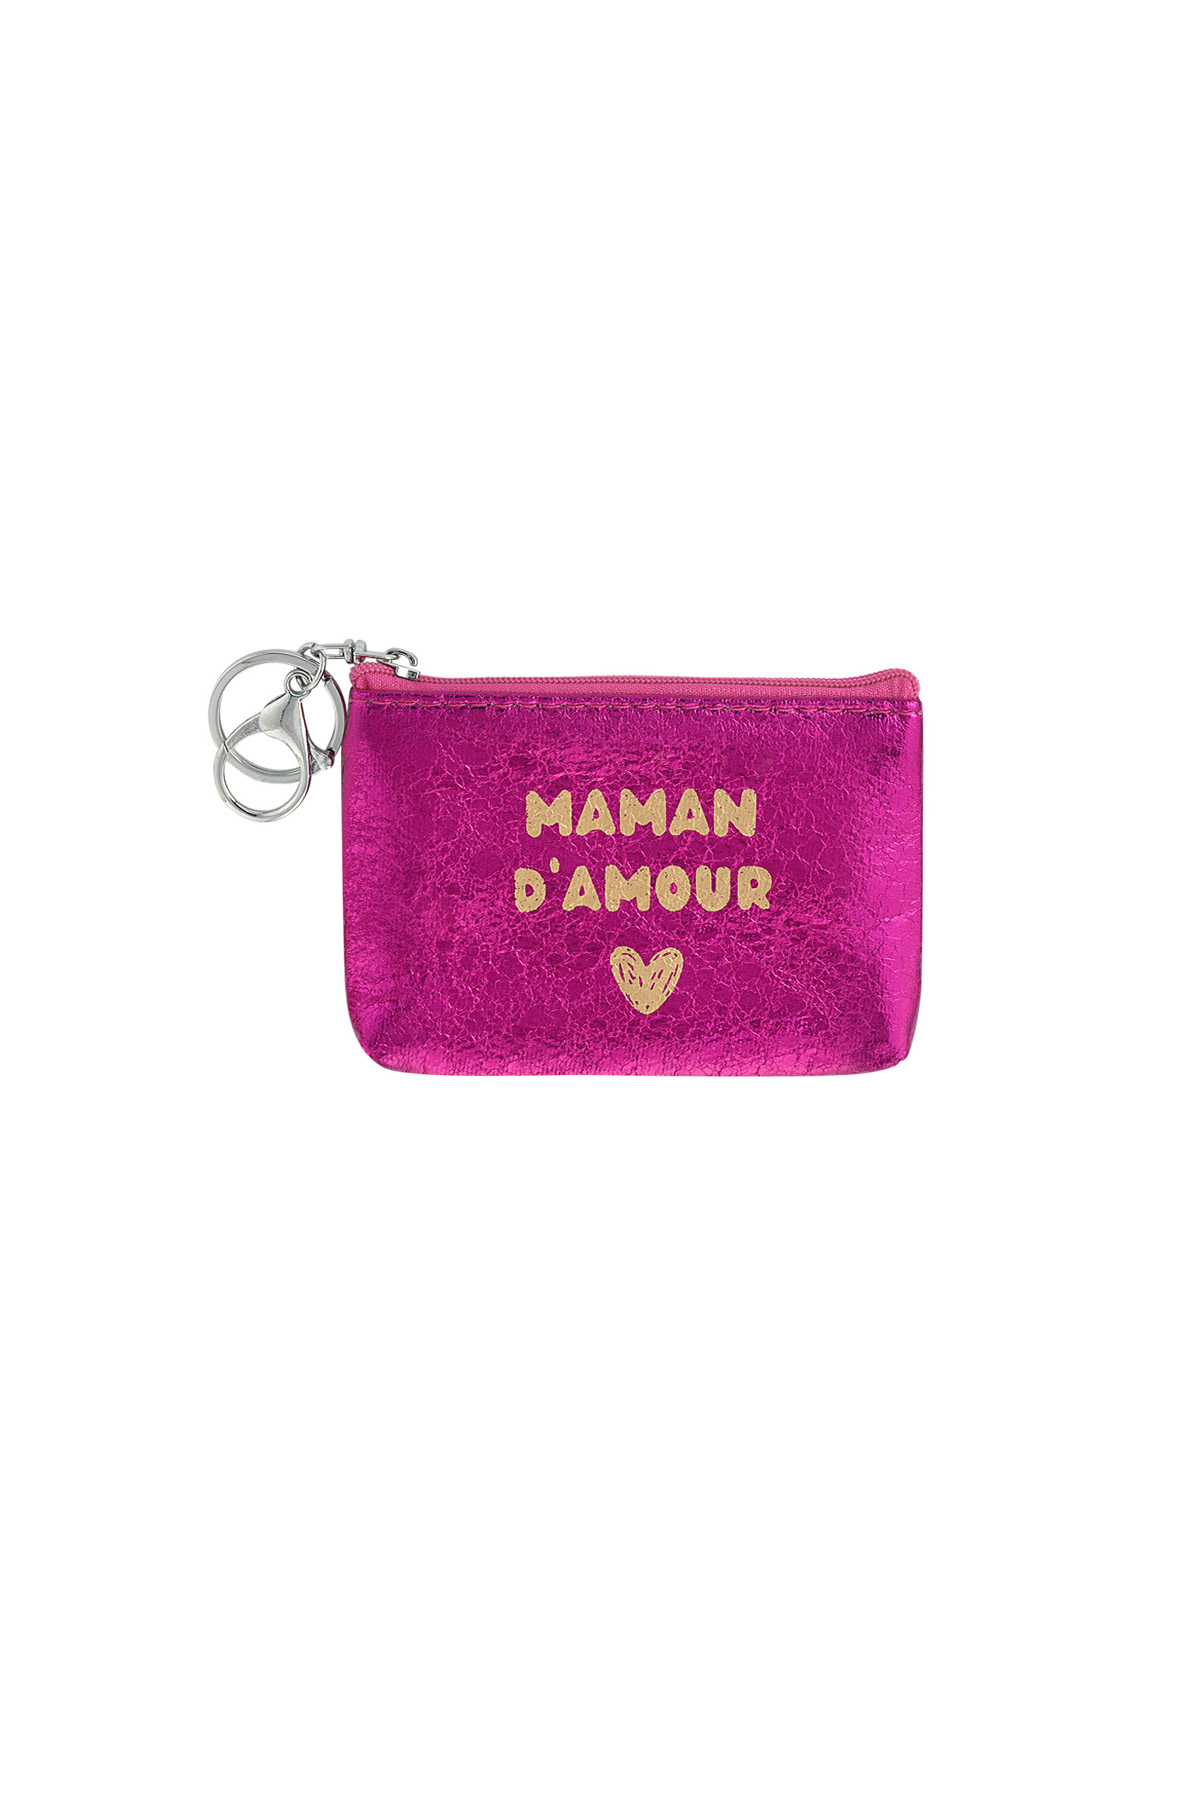 Anahtarlık cüzdan metalik maman d'amour - fuşya h5 